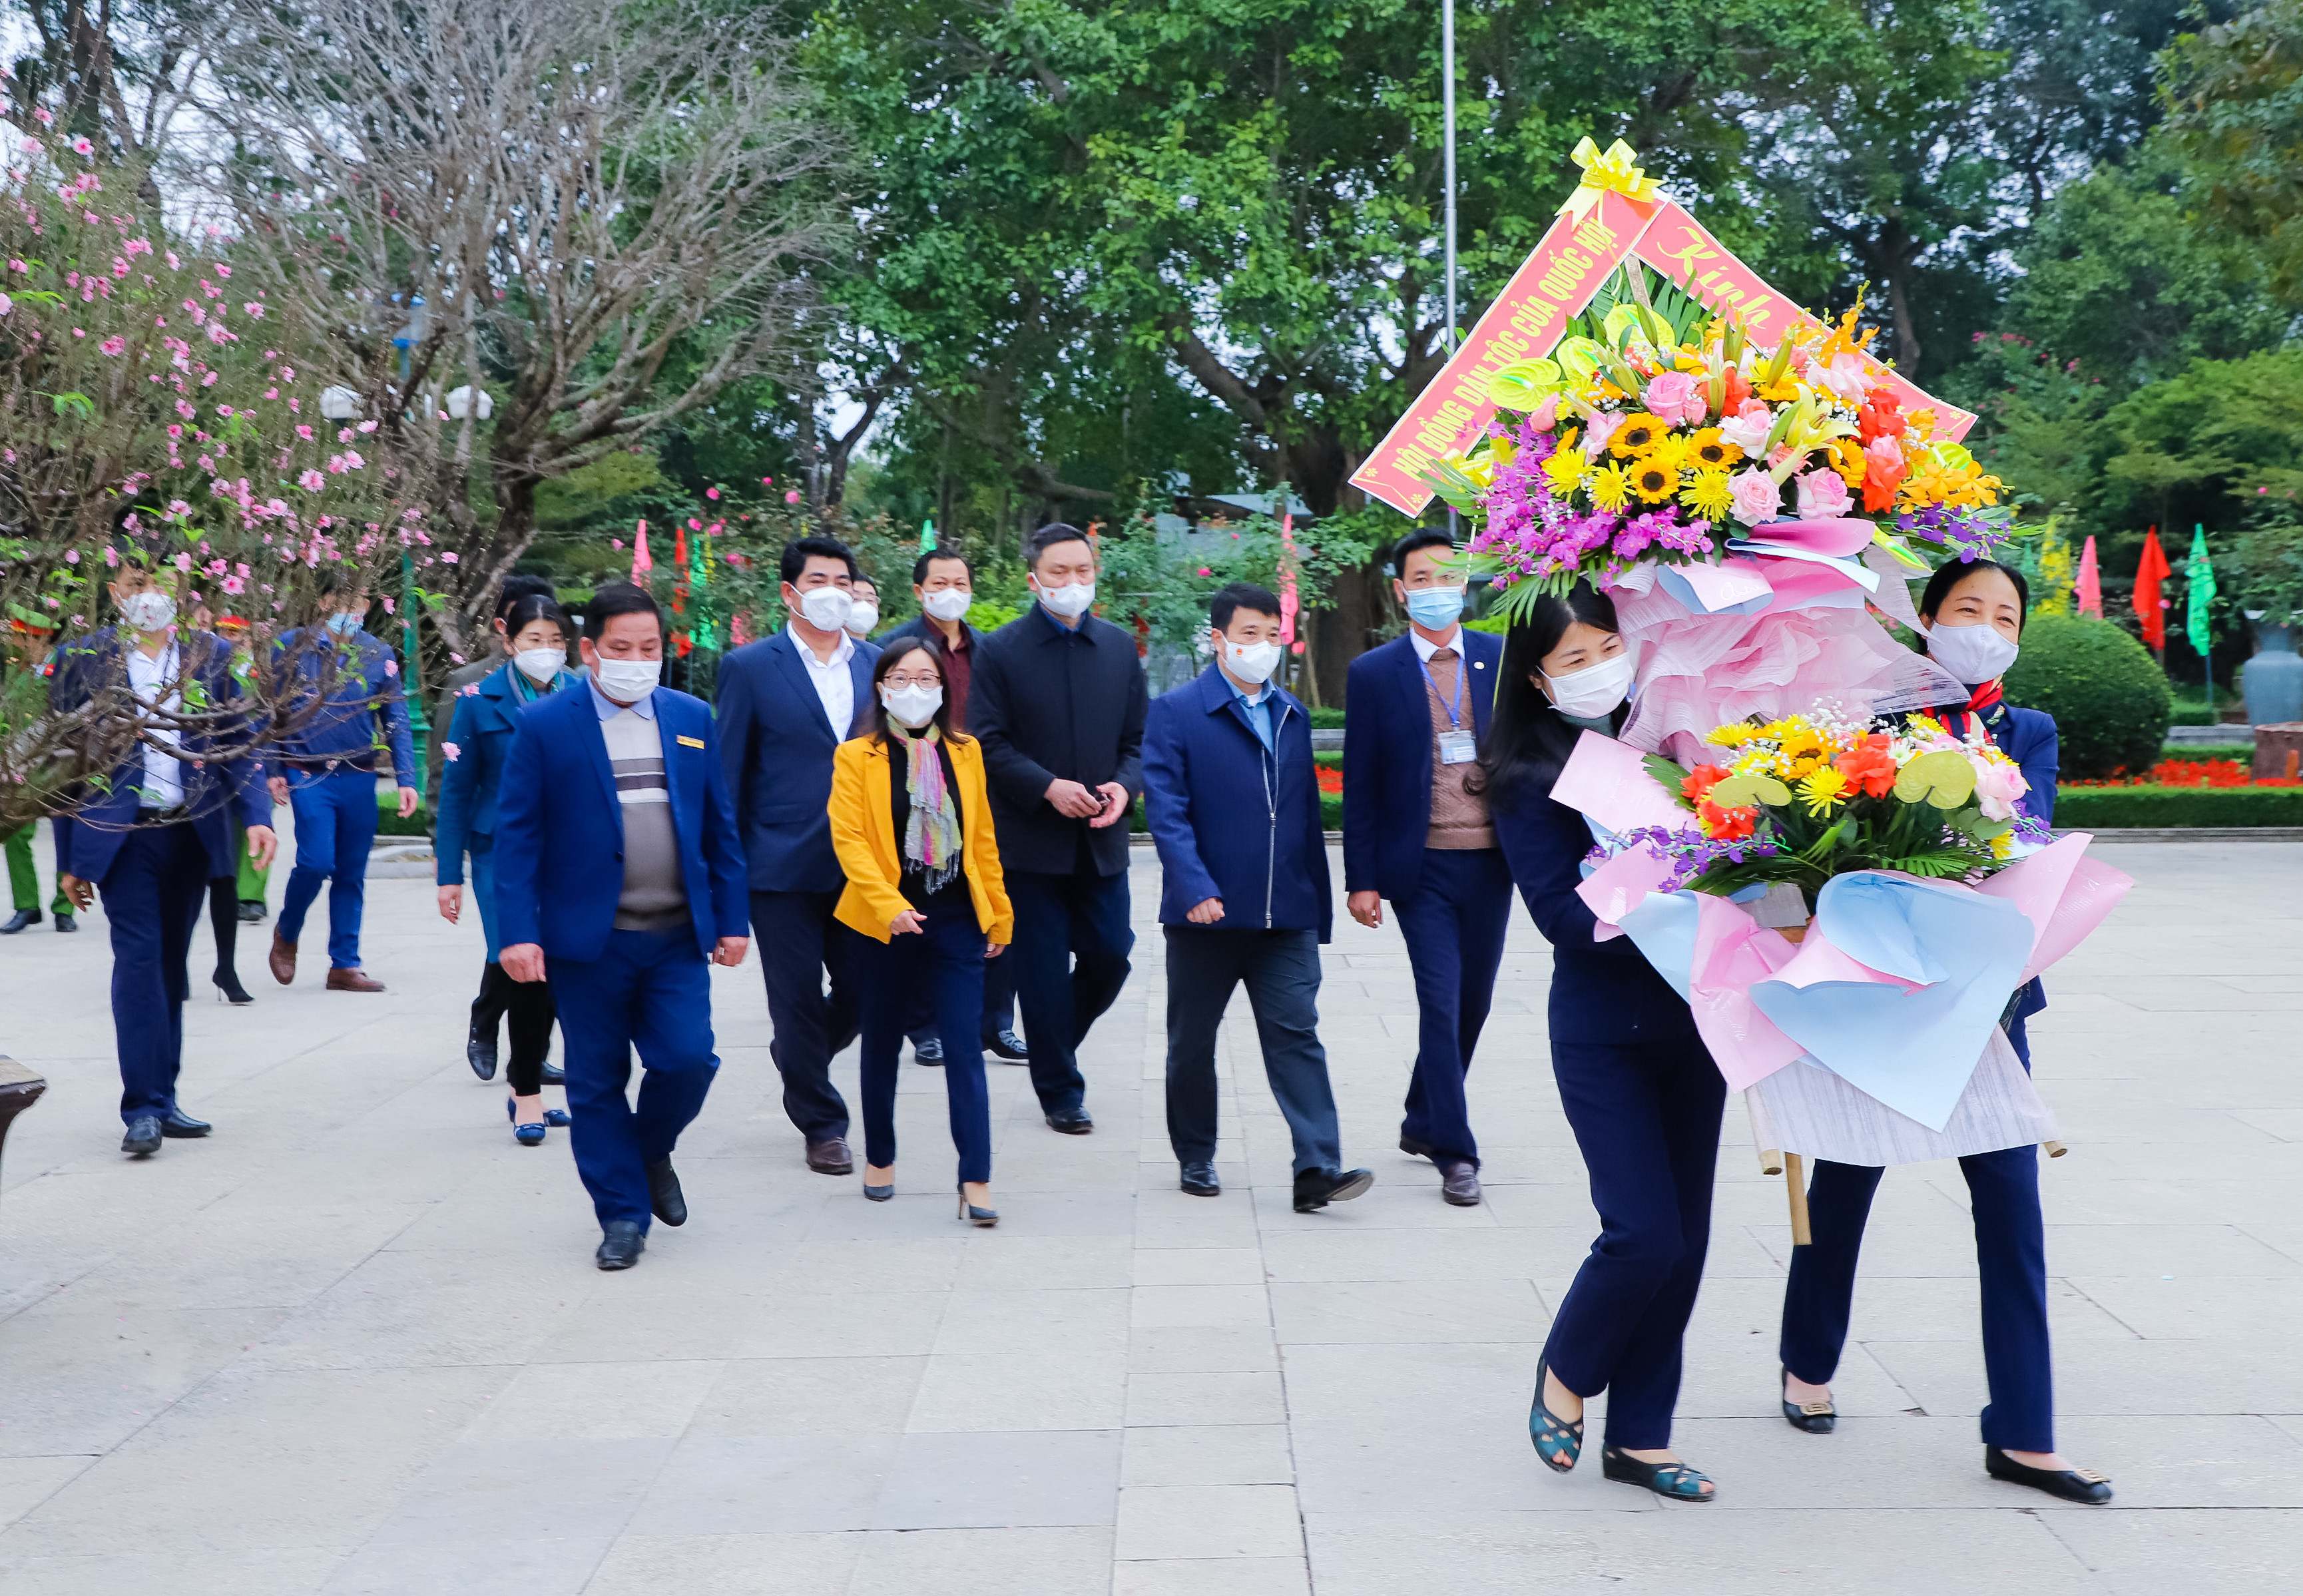 Đoàn đại biểu vào dâng hoa, dâng hương tưởng niệm Chủ tịch Hồ Chí Minh tại Khu di tích đặc biệt Kim Liên. Ảnh: Phạm Bằng